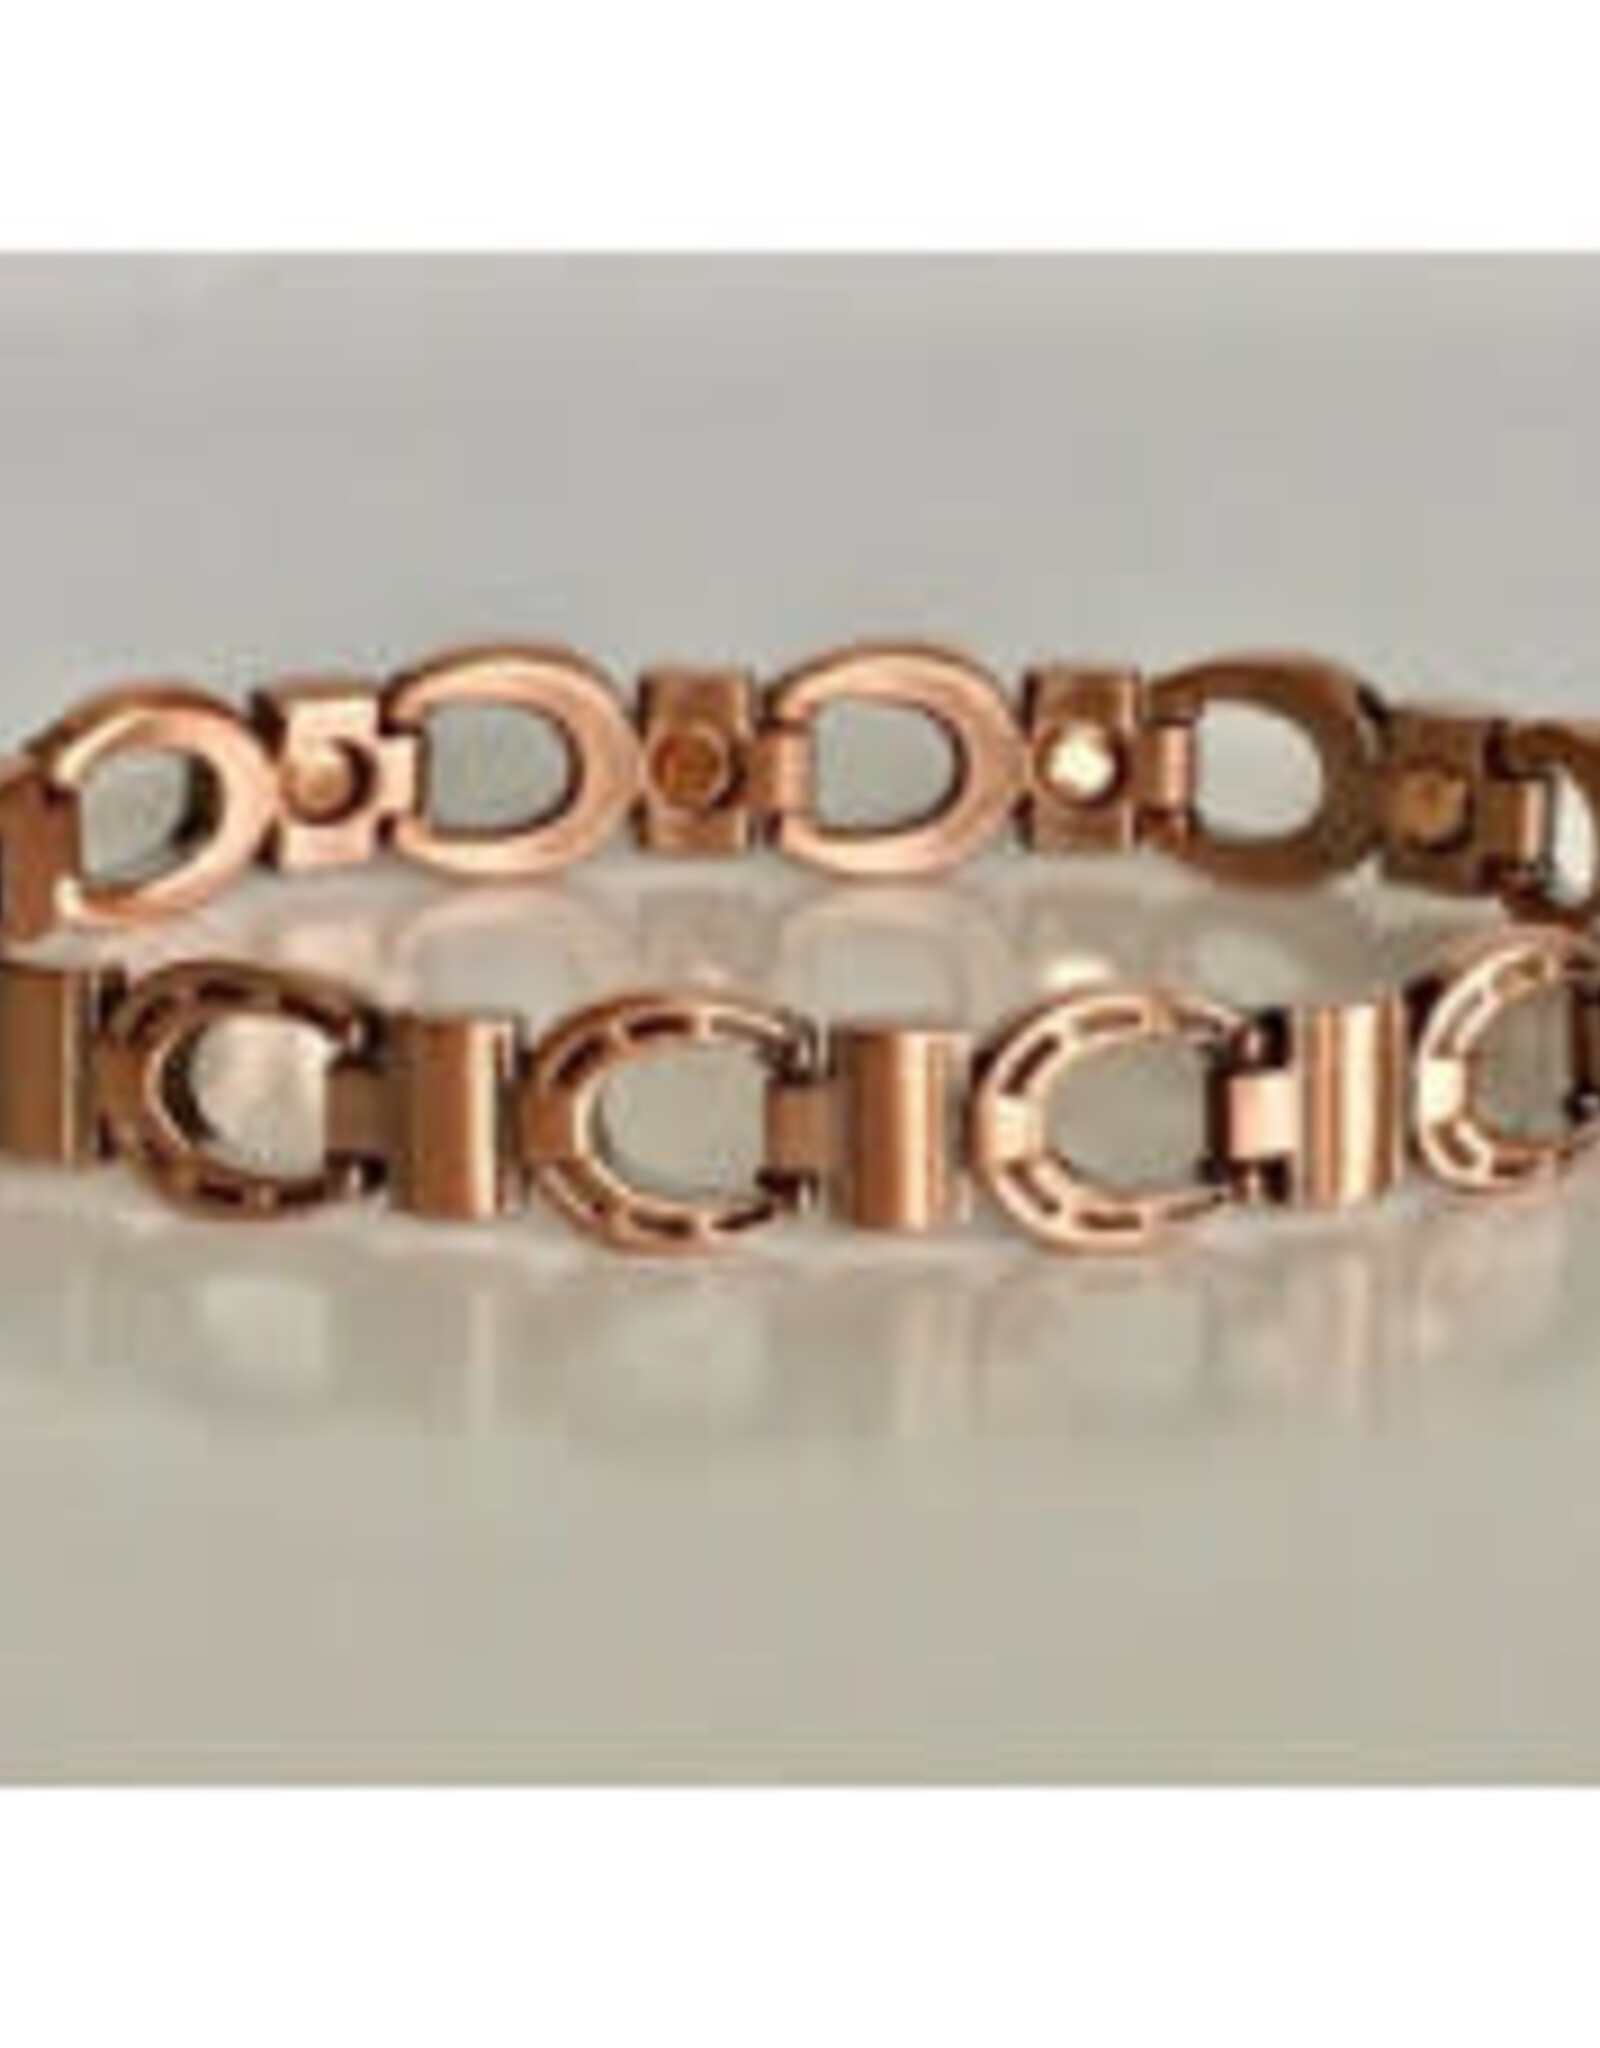 Magnetic Bracelets - Horseshoe style Copper